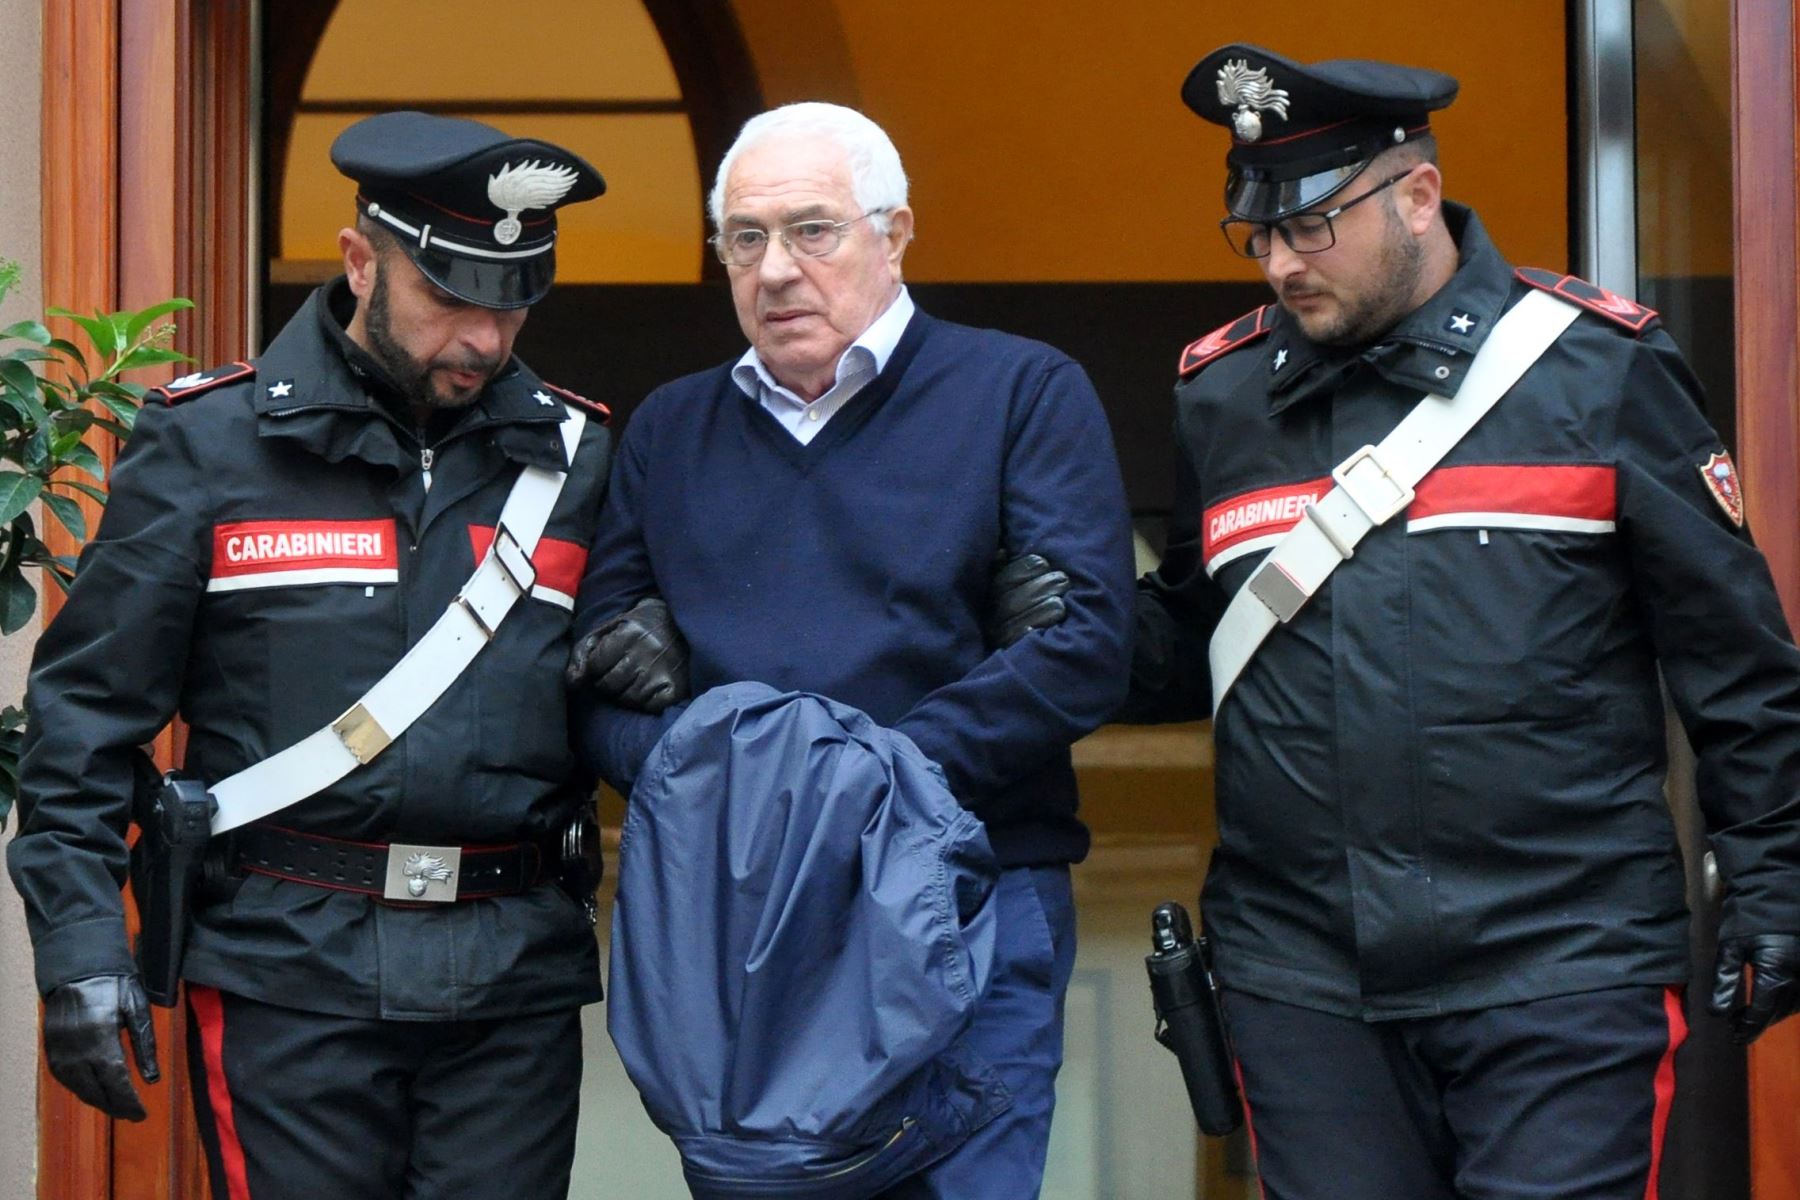 Settimo Mineo, joyero y nuevo jefe de la mafia siciliana, es escoltado por la policía. Foto: AFP.